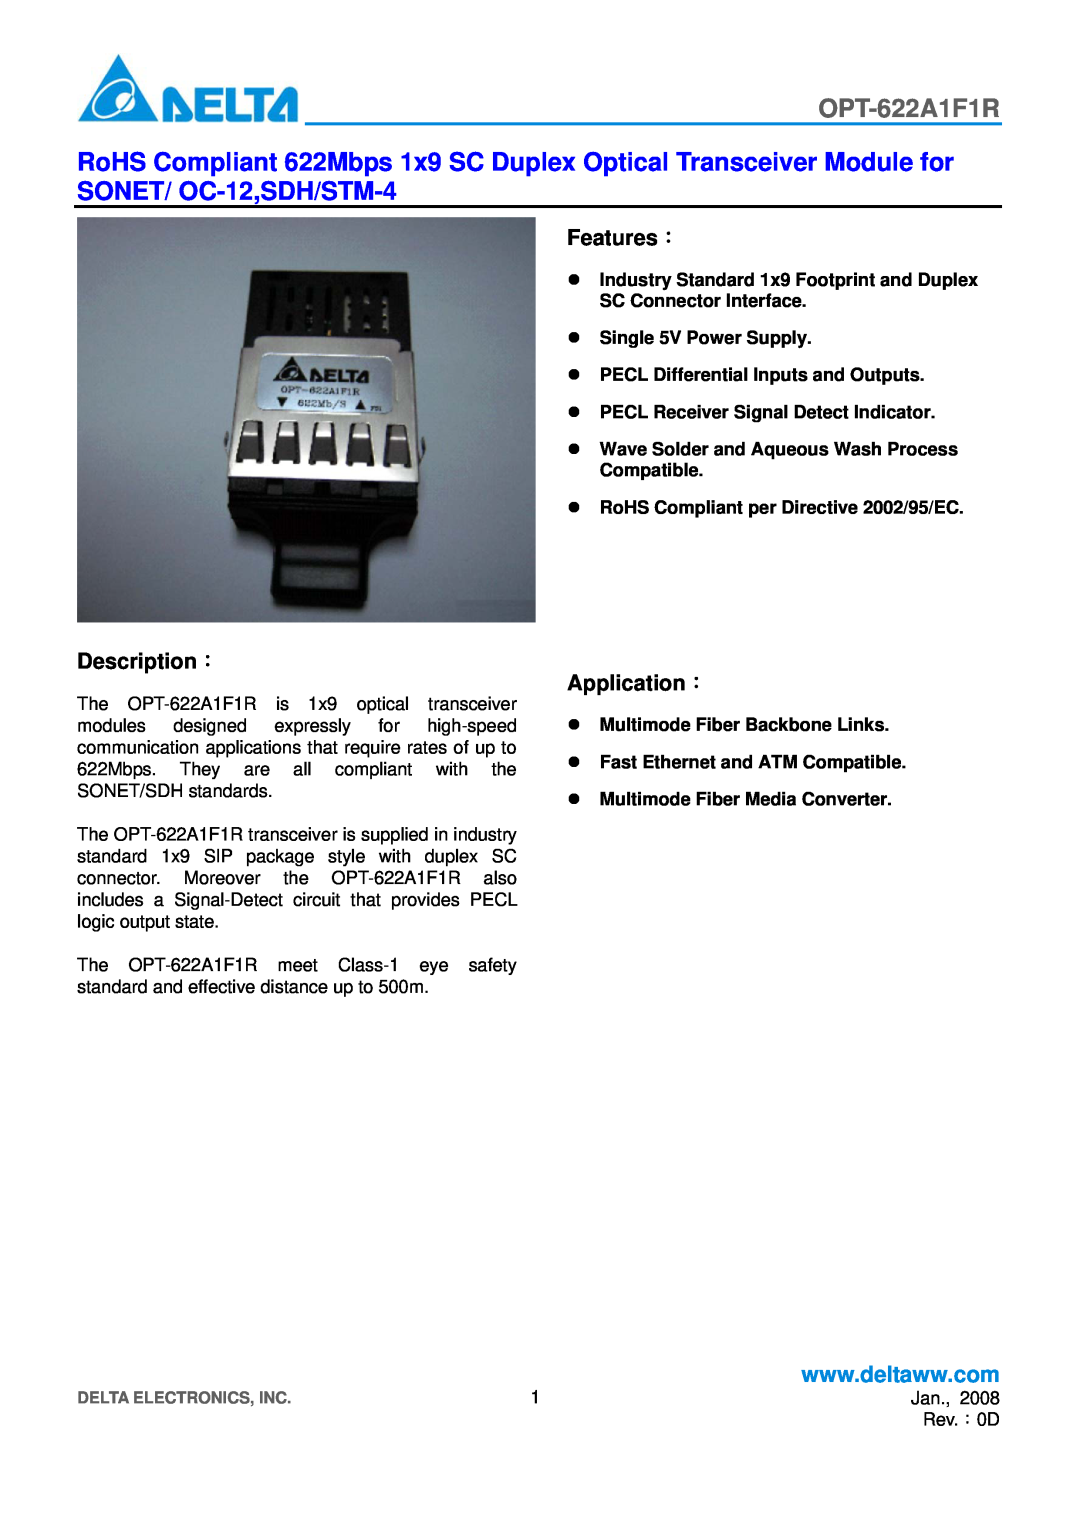 Delta Electronics OPT-622A1F1R manual Features：, Description：, Application： 